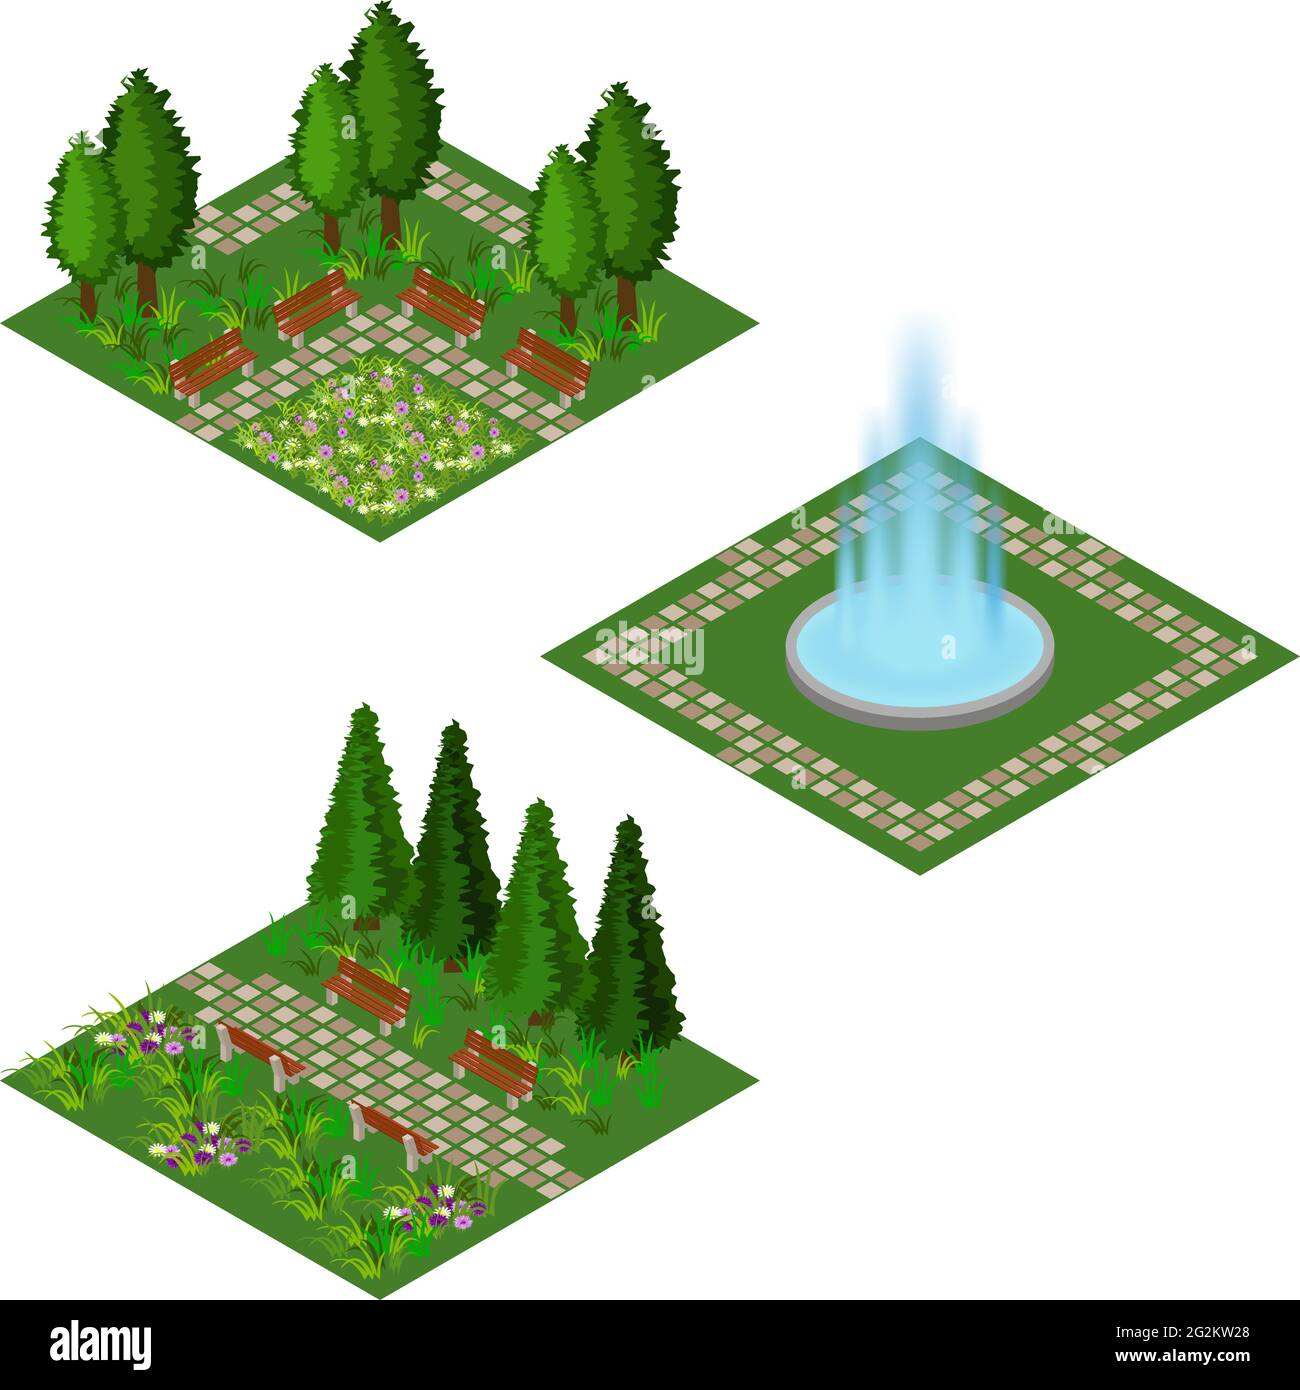 Garten isometrisches Set, um Gartenlandschaft Szene für Spiel Asset oder Cartoon-Hintergrund zu erstellen. Brunnen, Blumen, Sträucher und Bäume, gepflasterter Spaziergang. Isoliert Stock Vektor